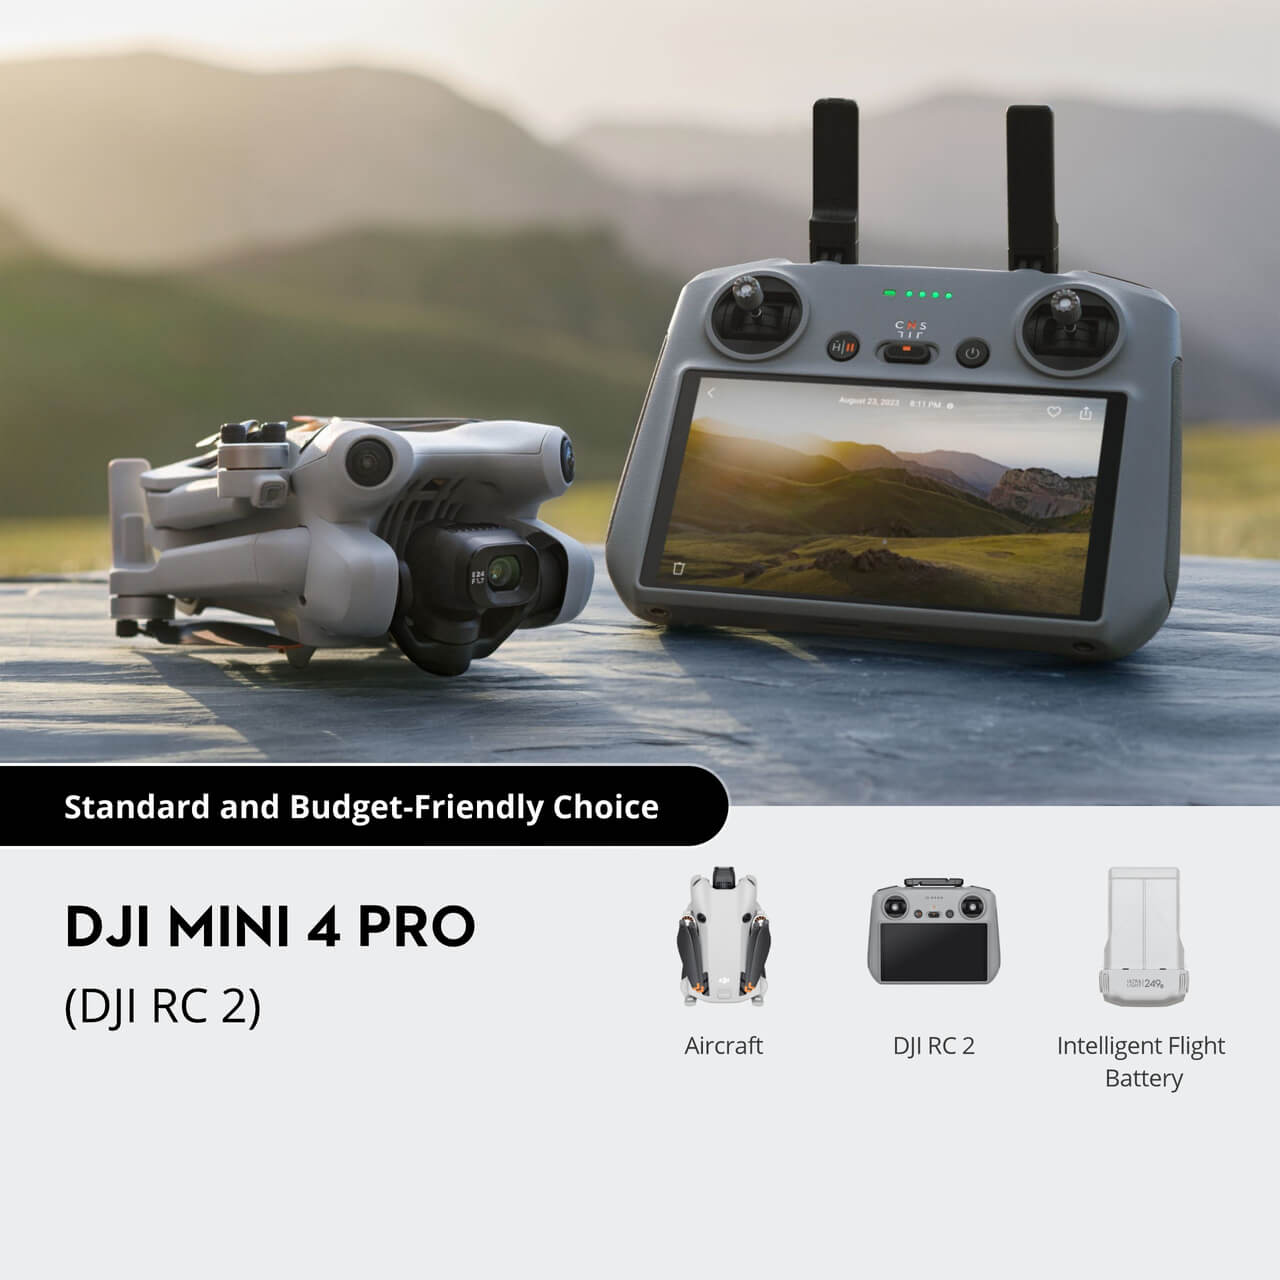 DJI Mini 4 Pro Fly More Combo Plus with DJI RC 2 (Screen Remote